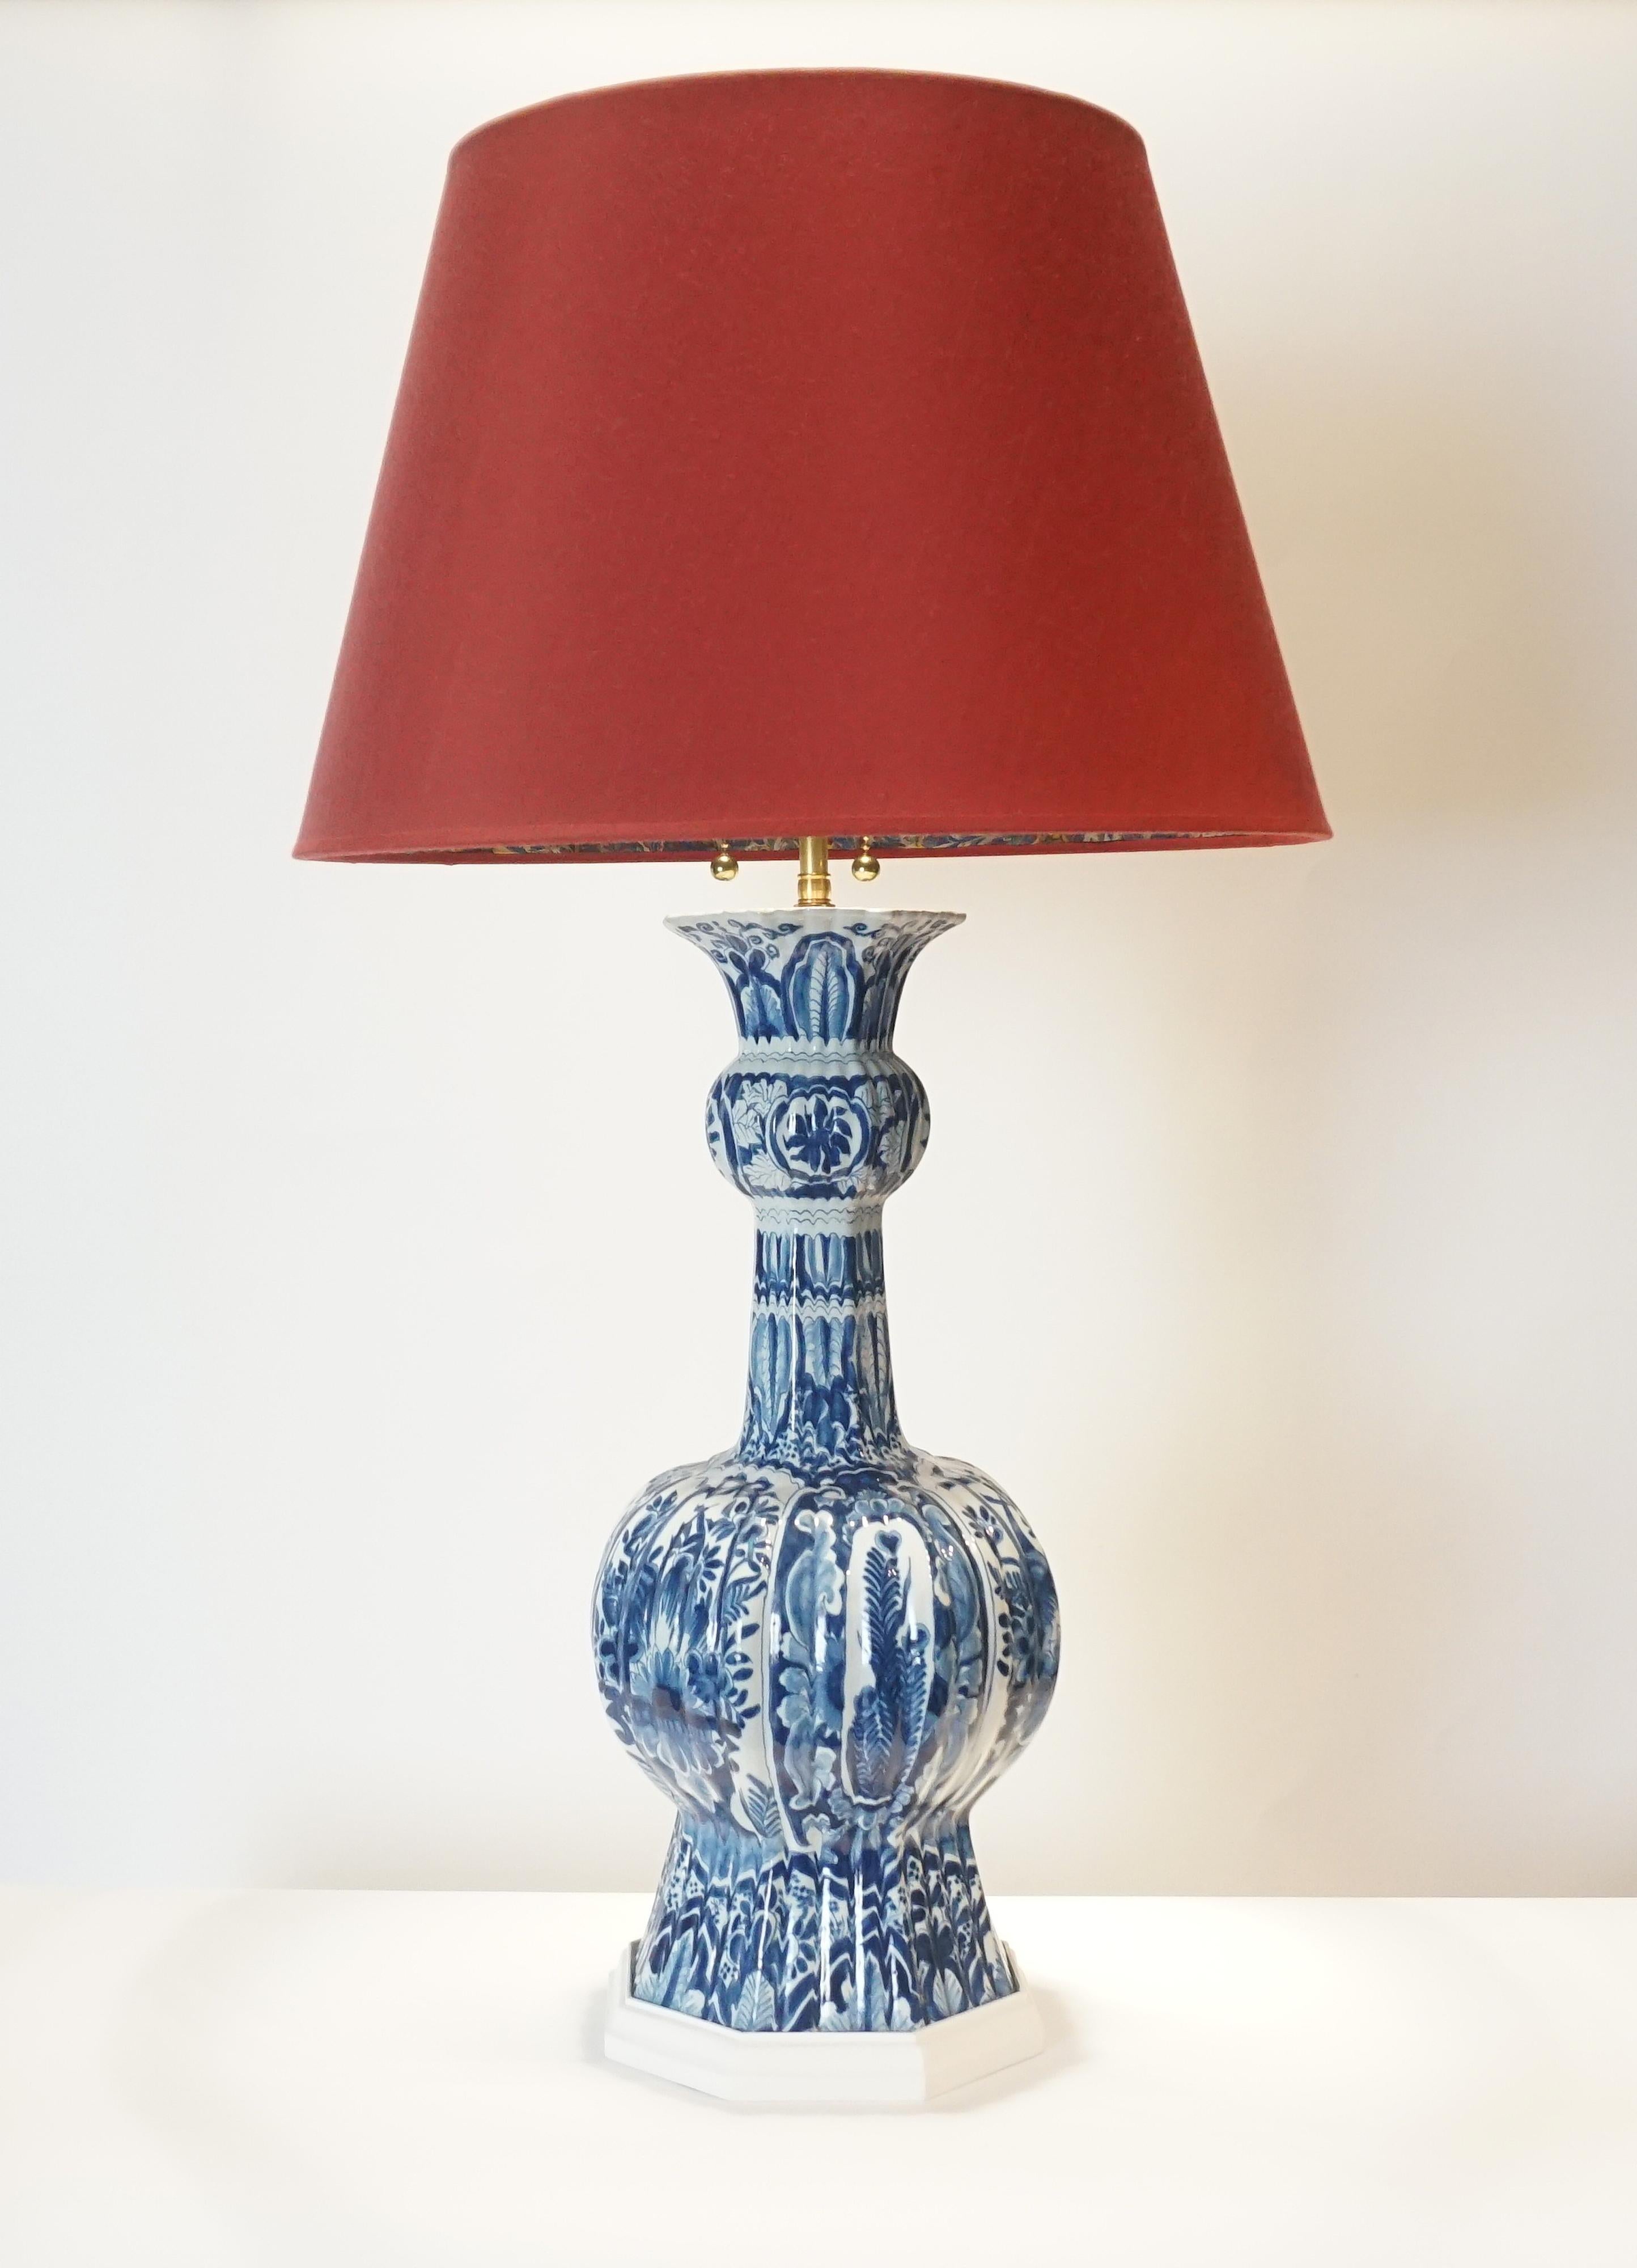 Blue and White Dutch Delft Vase Table Lamp (18. Jahrhundert und früher)